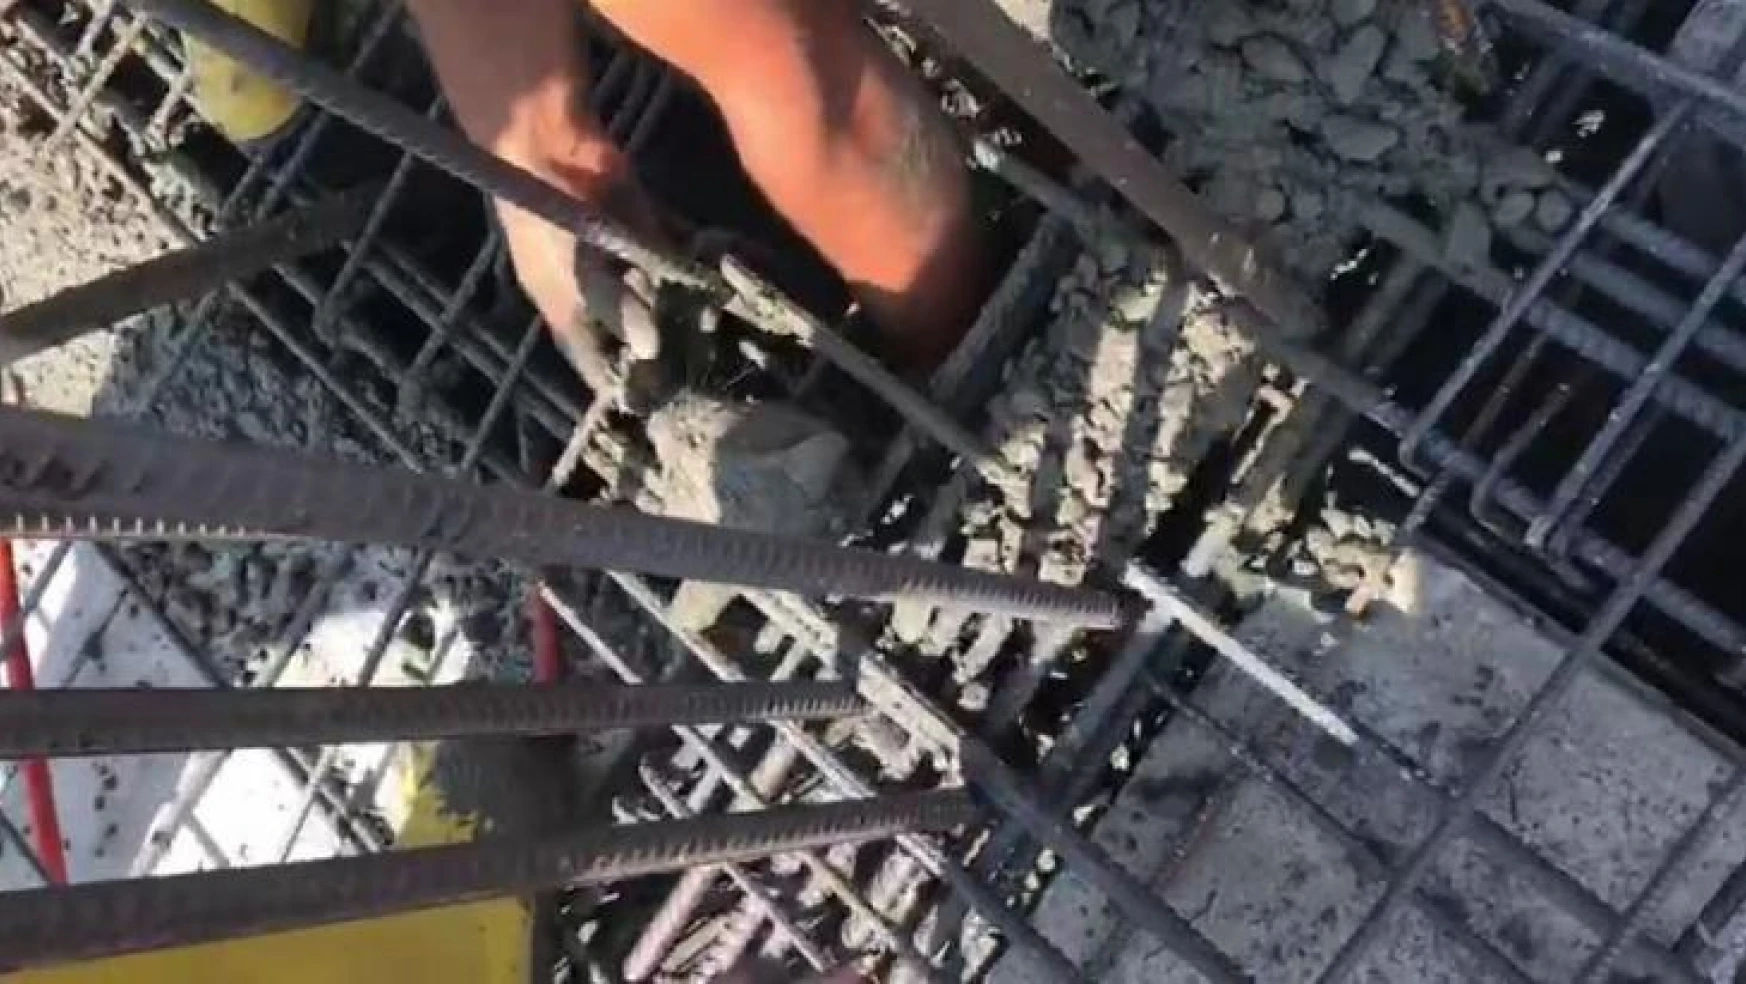 Üzerine yanlışlıkla beton dökülen yavru kedi işçiler tarafından kurtarıldı